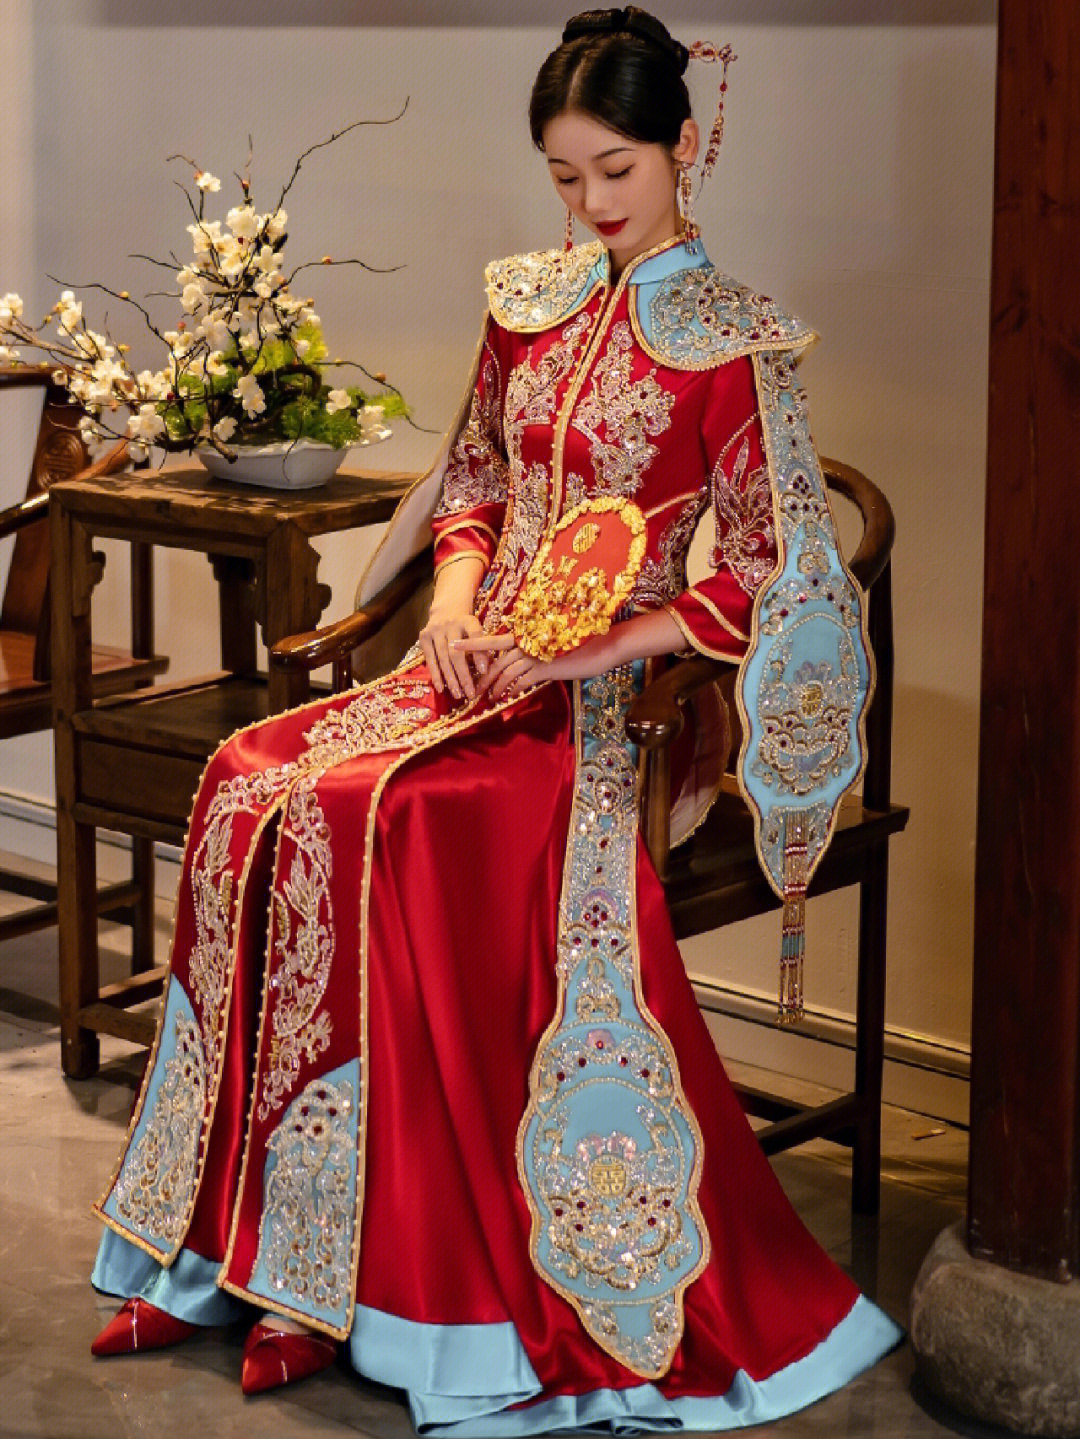 结婚穿的中式礼服叫啥图片